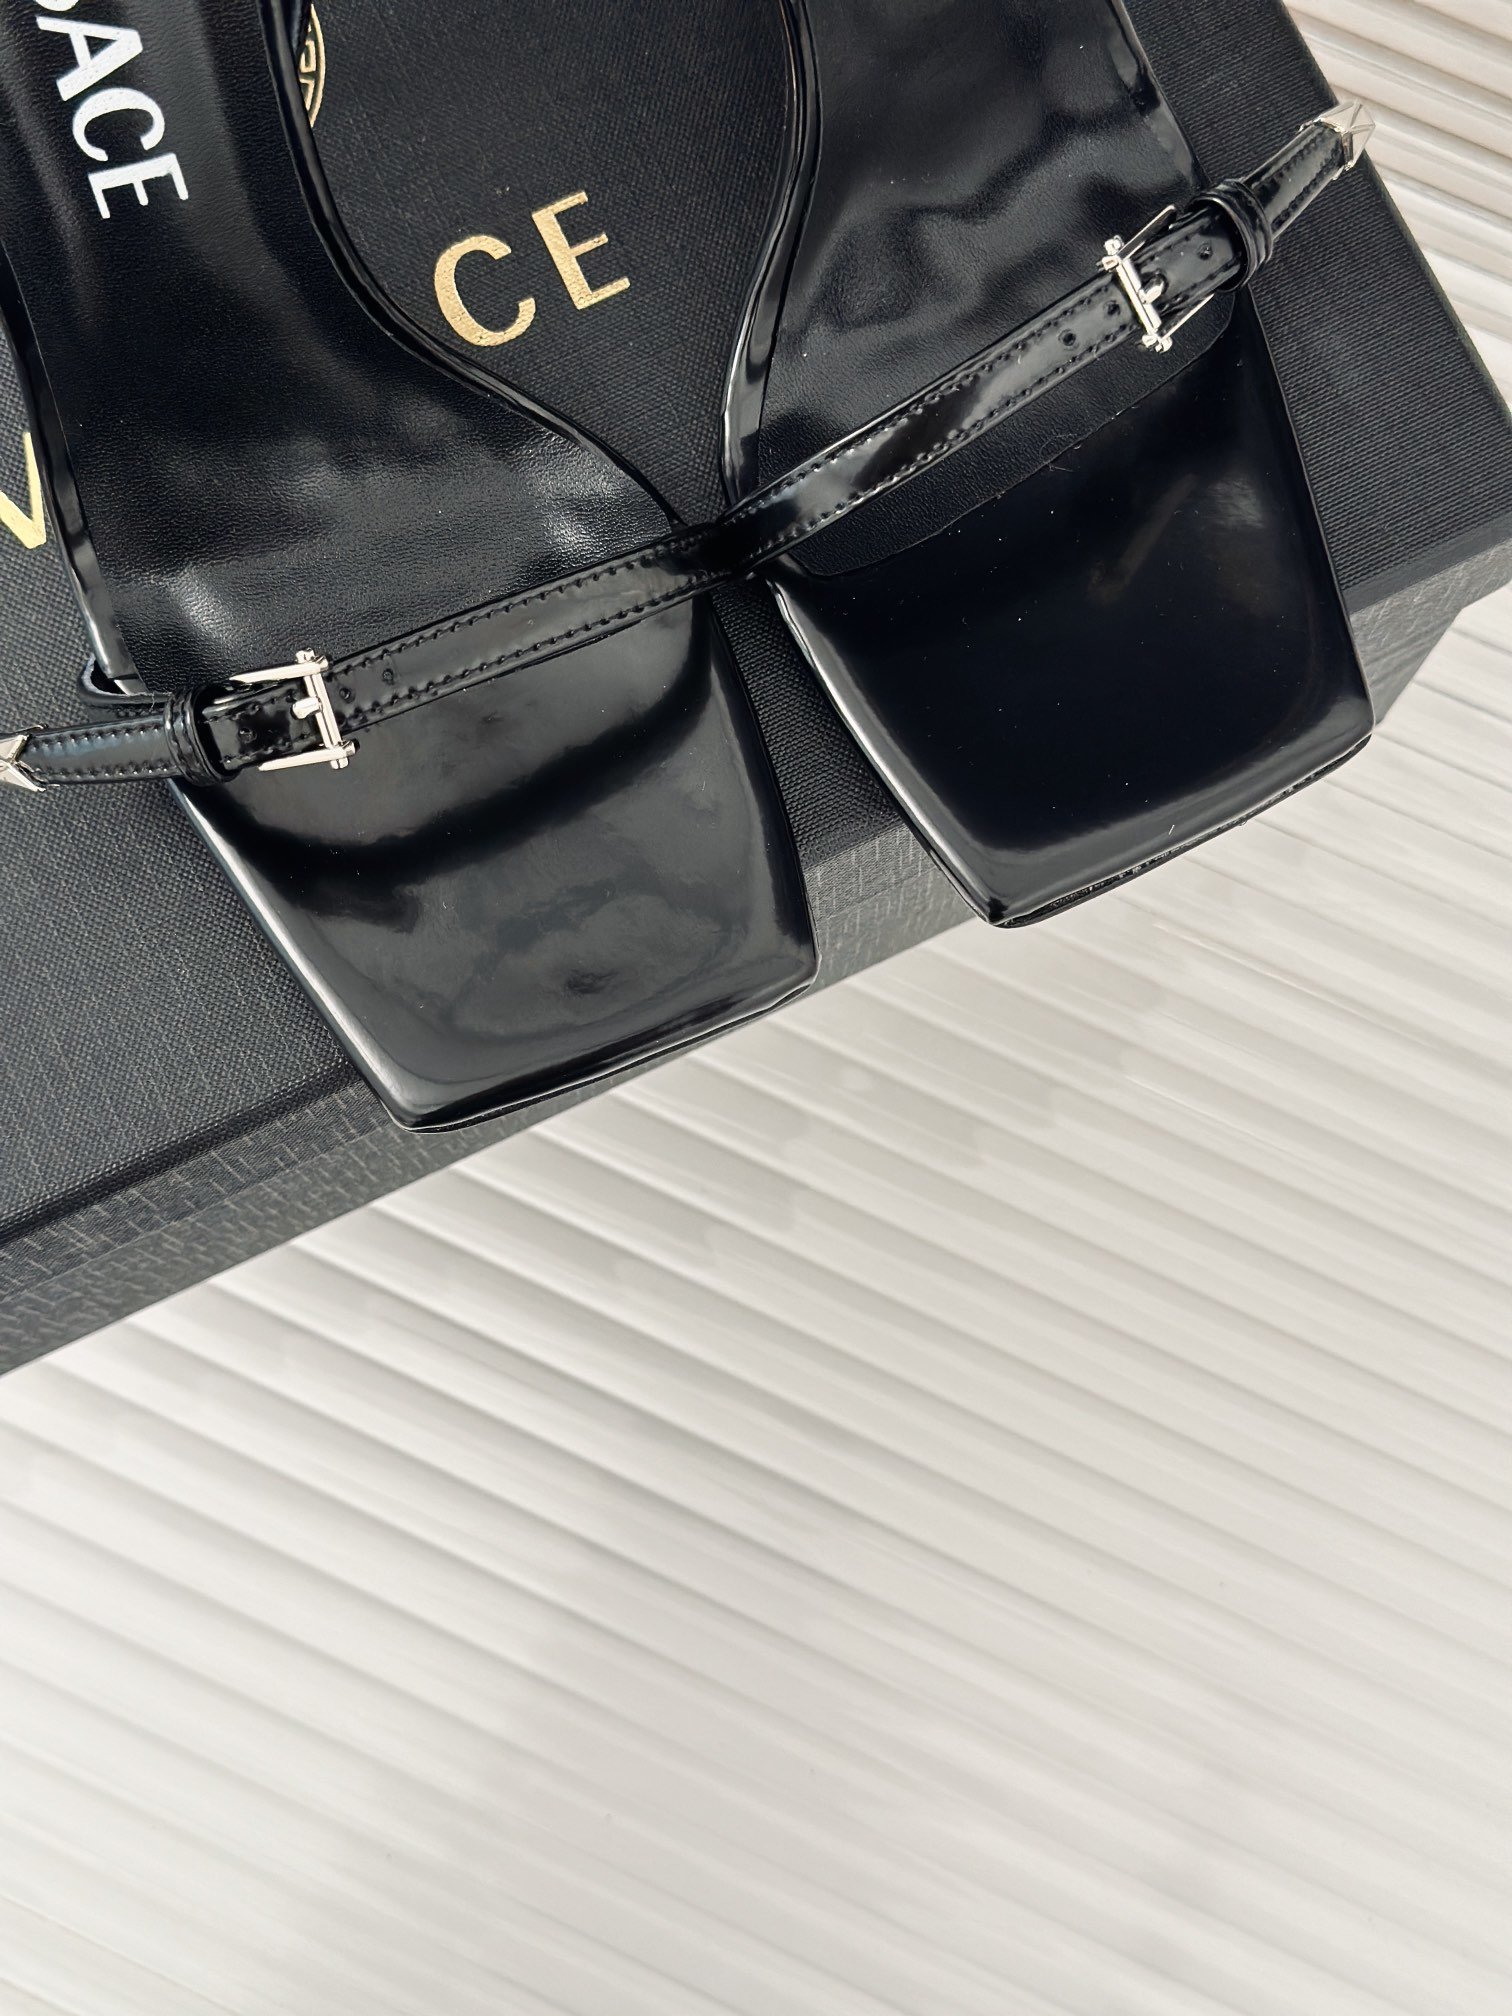 versace范思哲24S春夏新品金属美人头高跟凉鞋鞋面采用进口小牛皮内里垫脚进口山羊皮跟高10cm意大